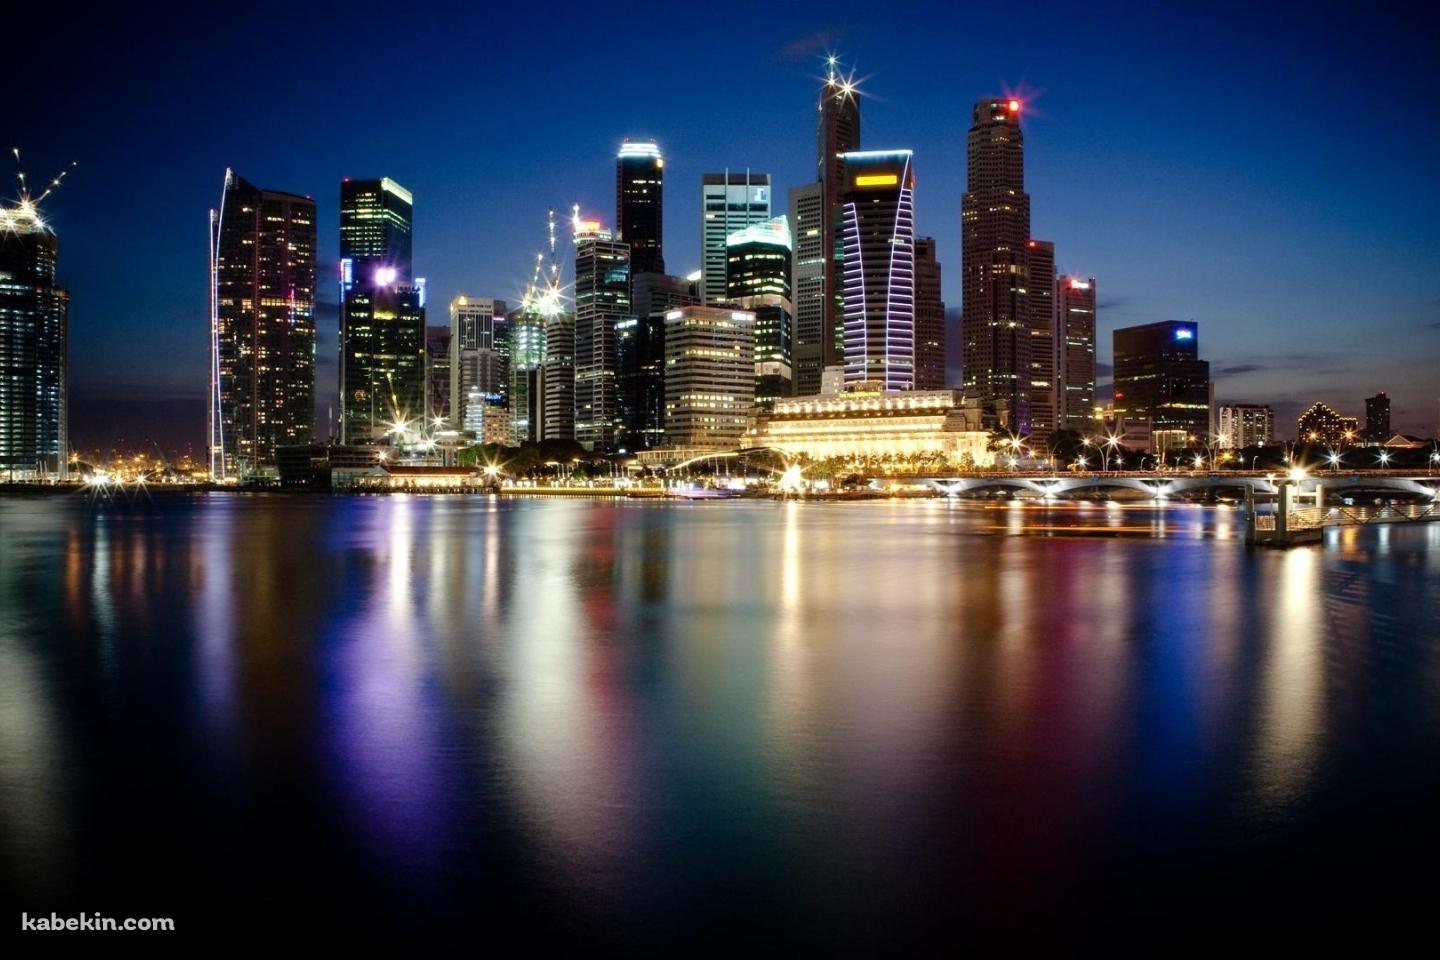 シンガポールの夜景の壁紙(1440px x 960px) 高画質 PC・デスクトップ用